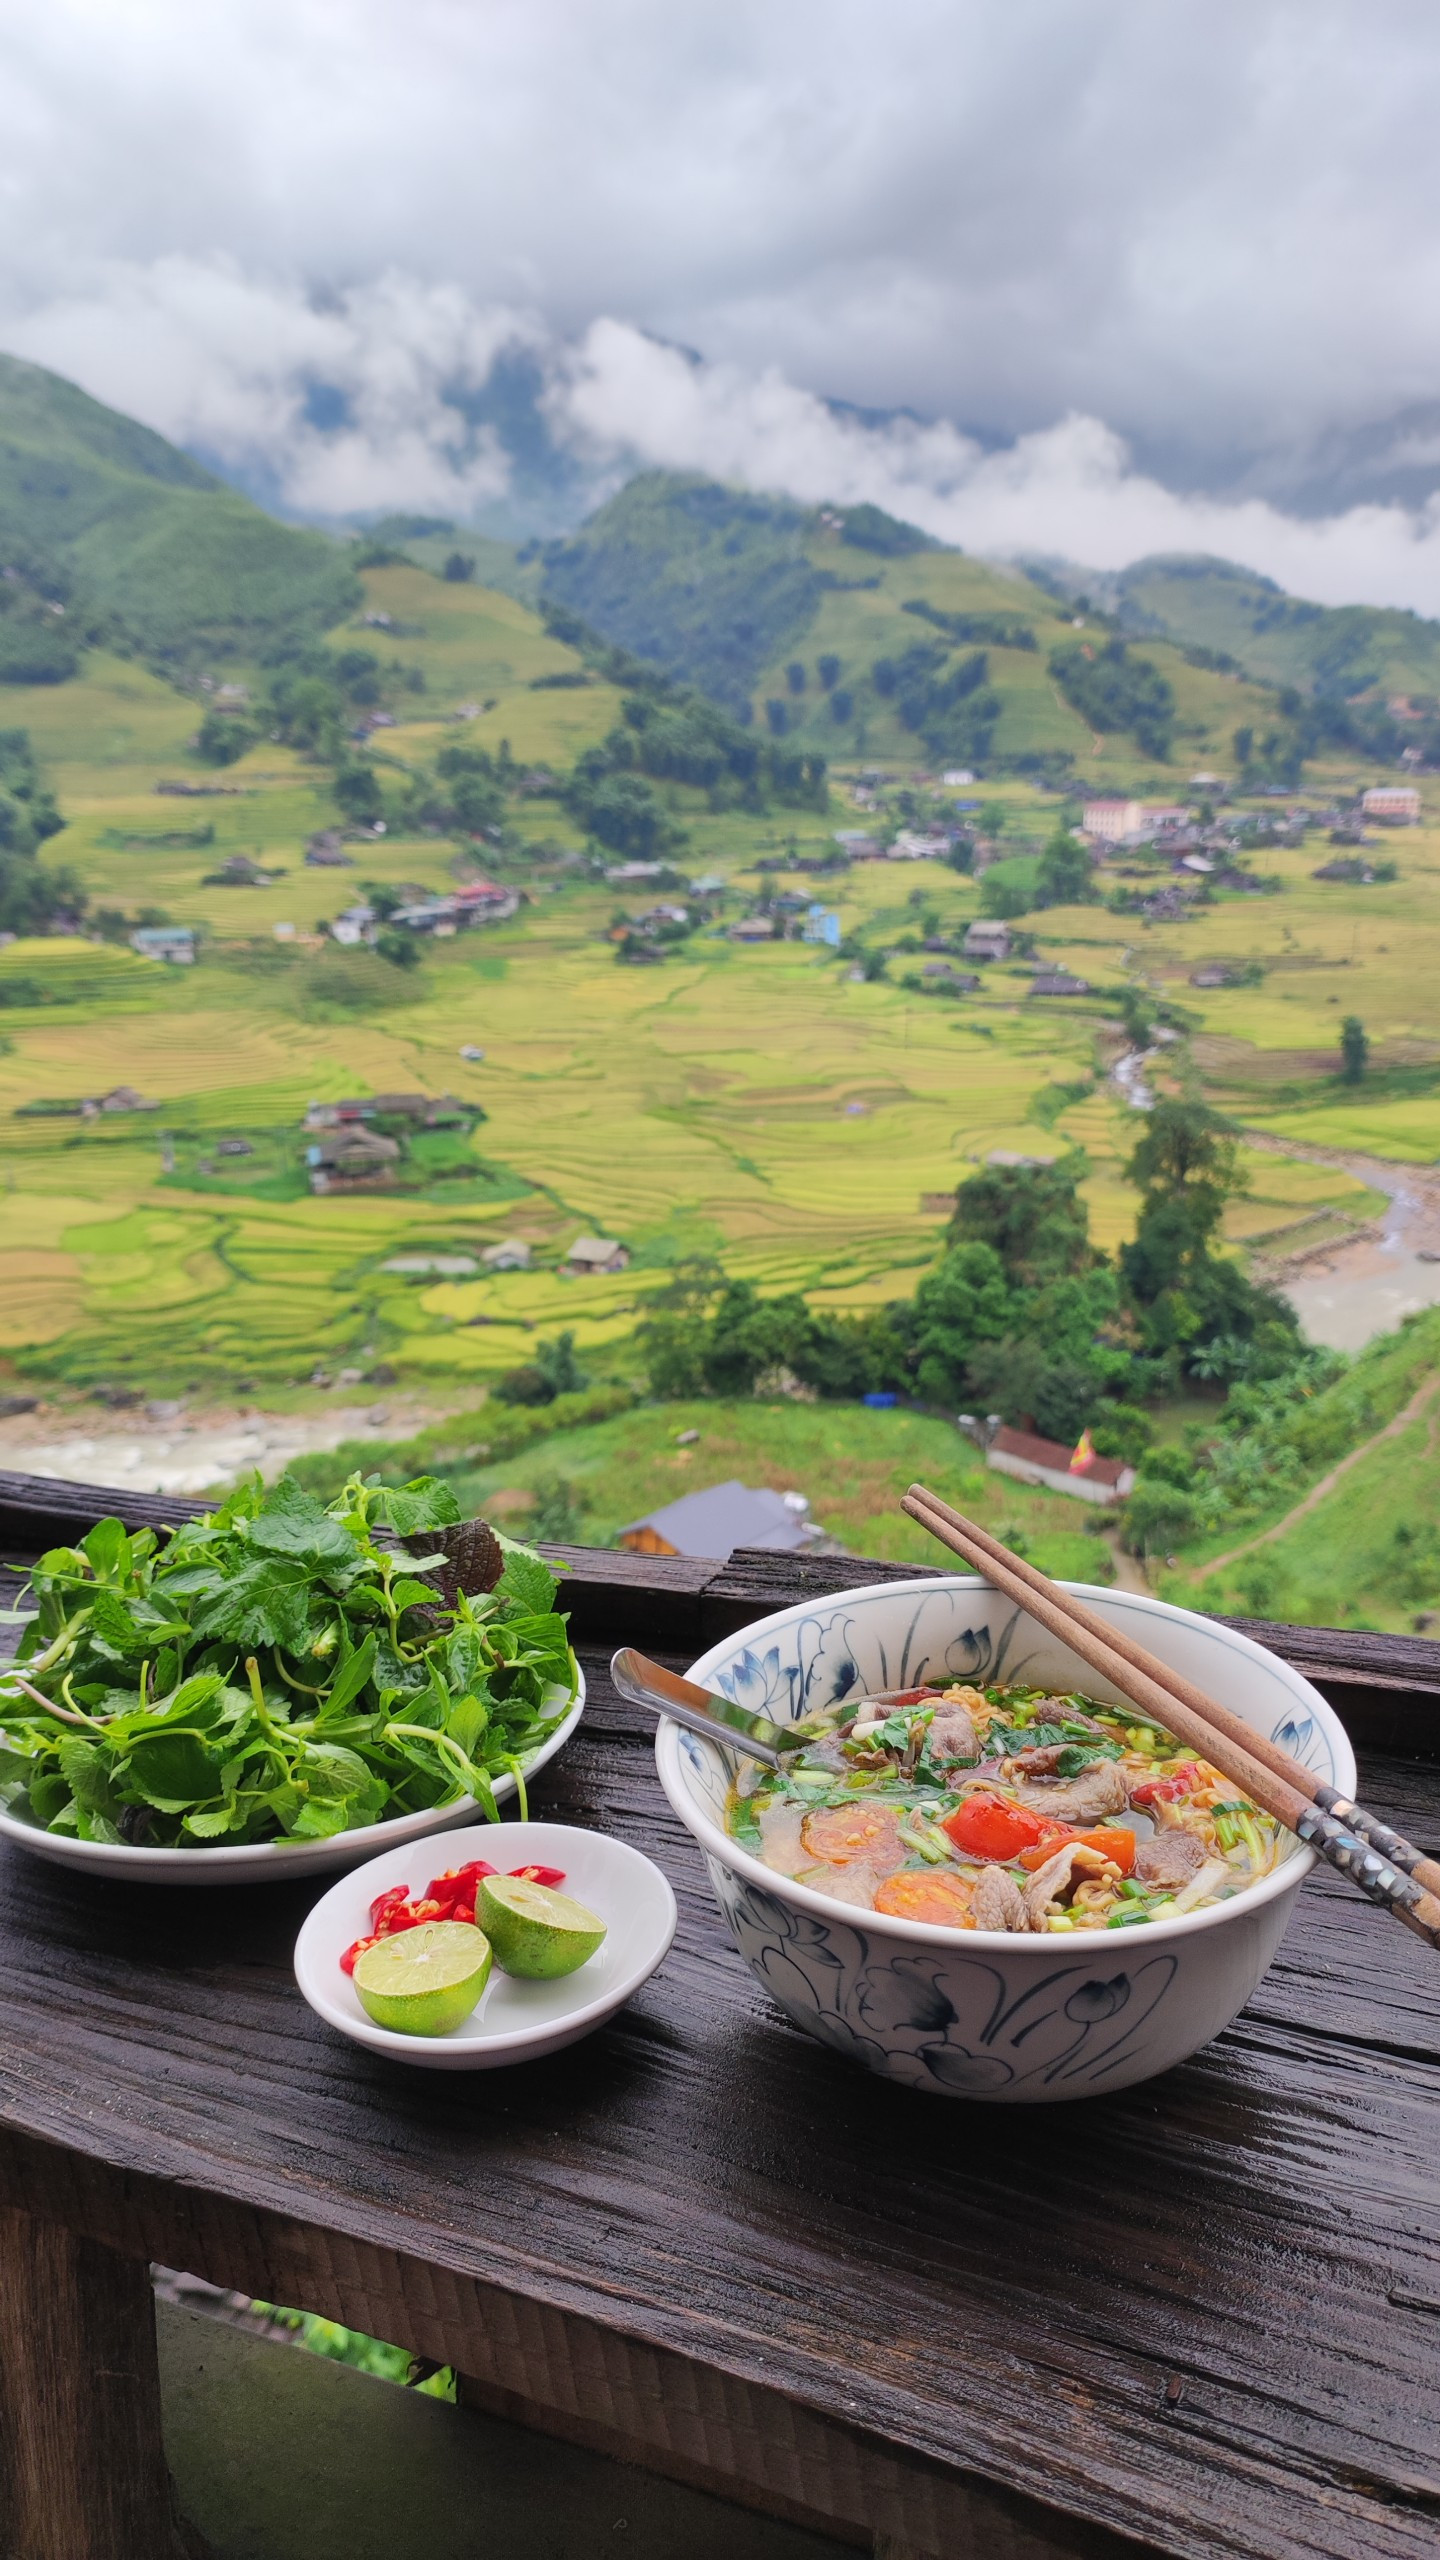 Trào lưu khoe ảnh ăn mì tại những địa điểm đẹp nhất Việt Nam - 4